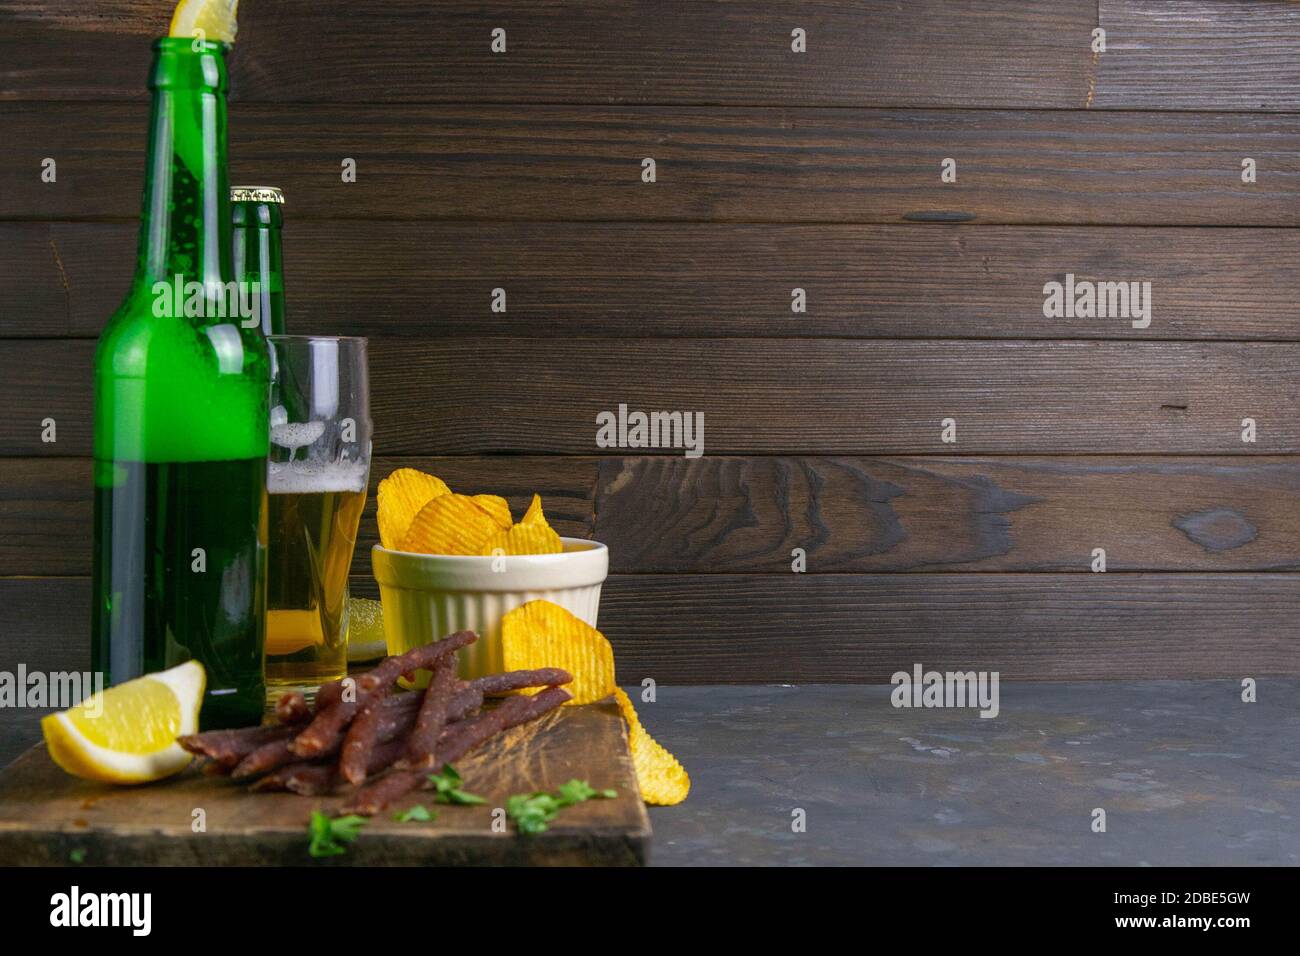 Spuntino al caviale di pesce con birra, limoni e patatine su tavola di legno scuro. Spuntino a base di pesce con birra. Vista frontale con spazio libero. Foto Stock